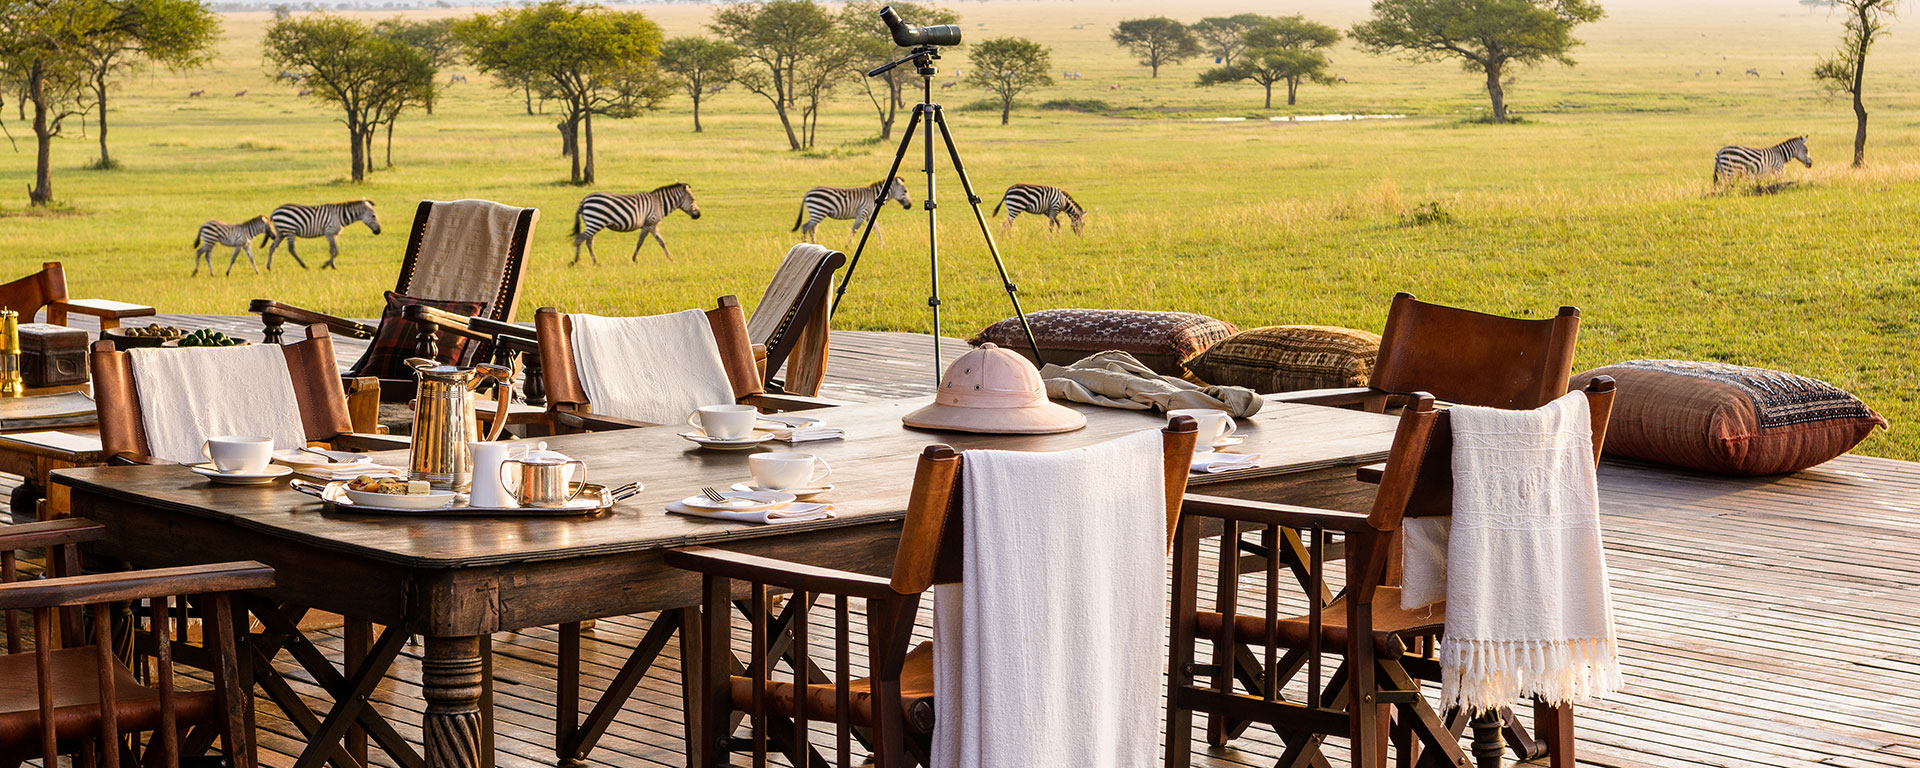 Your Private Luxury Tanzania Safaris